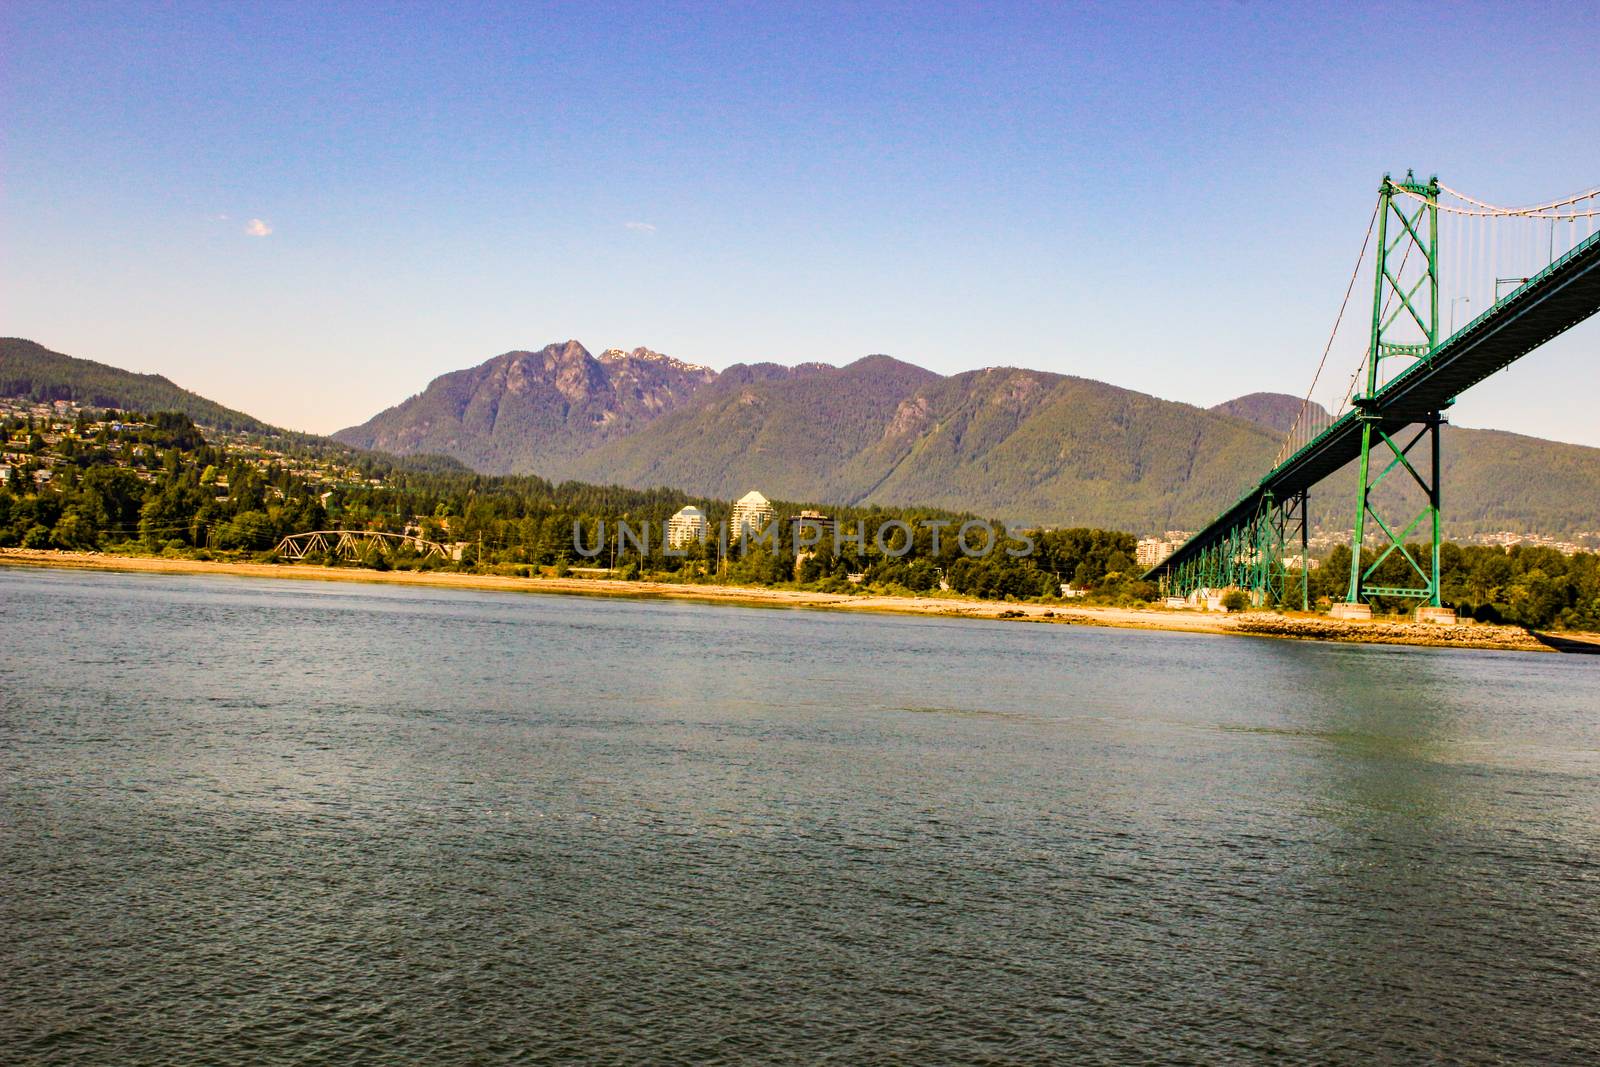 Lions Bridge. In Vancouver in British Columbia, Canada.